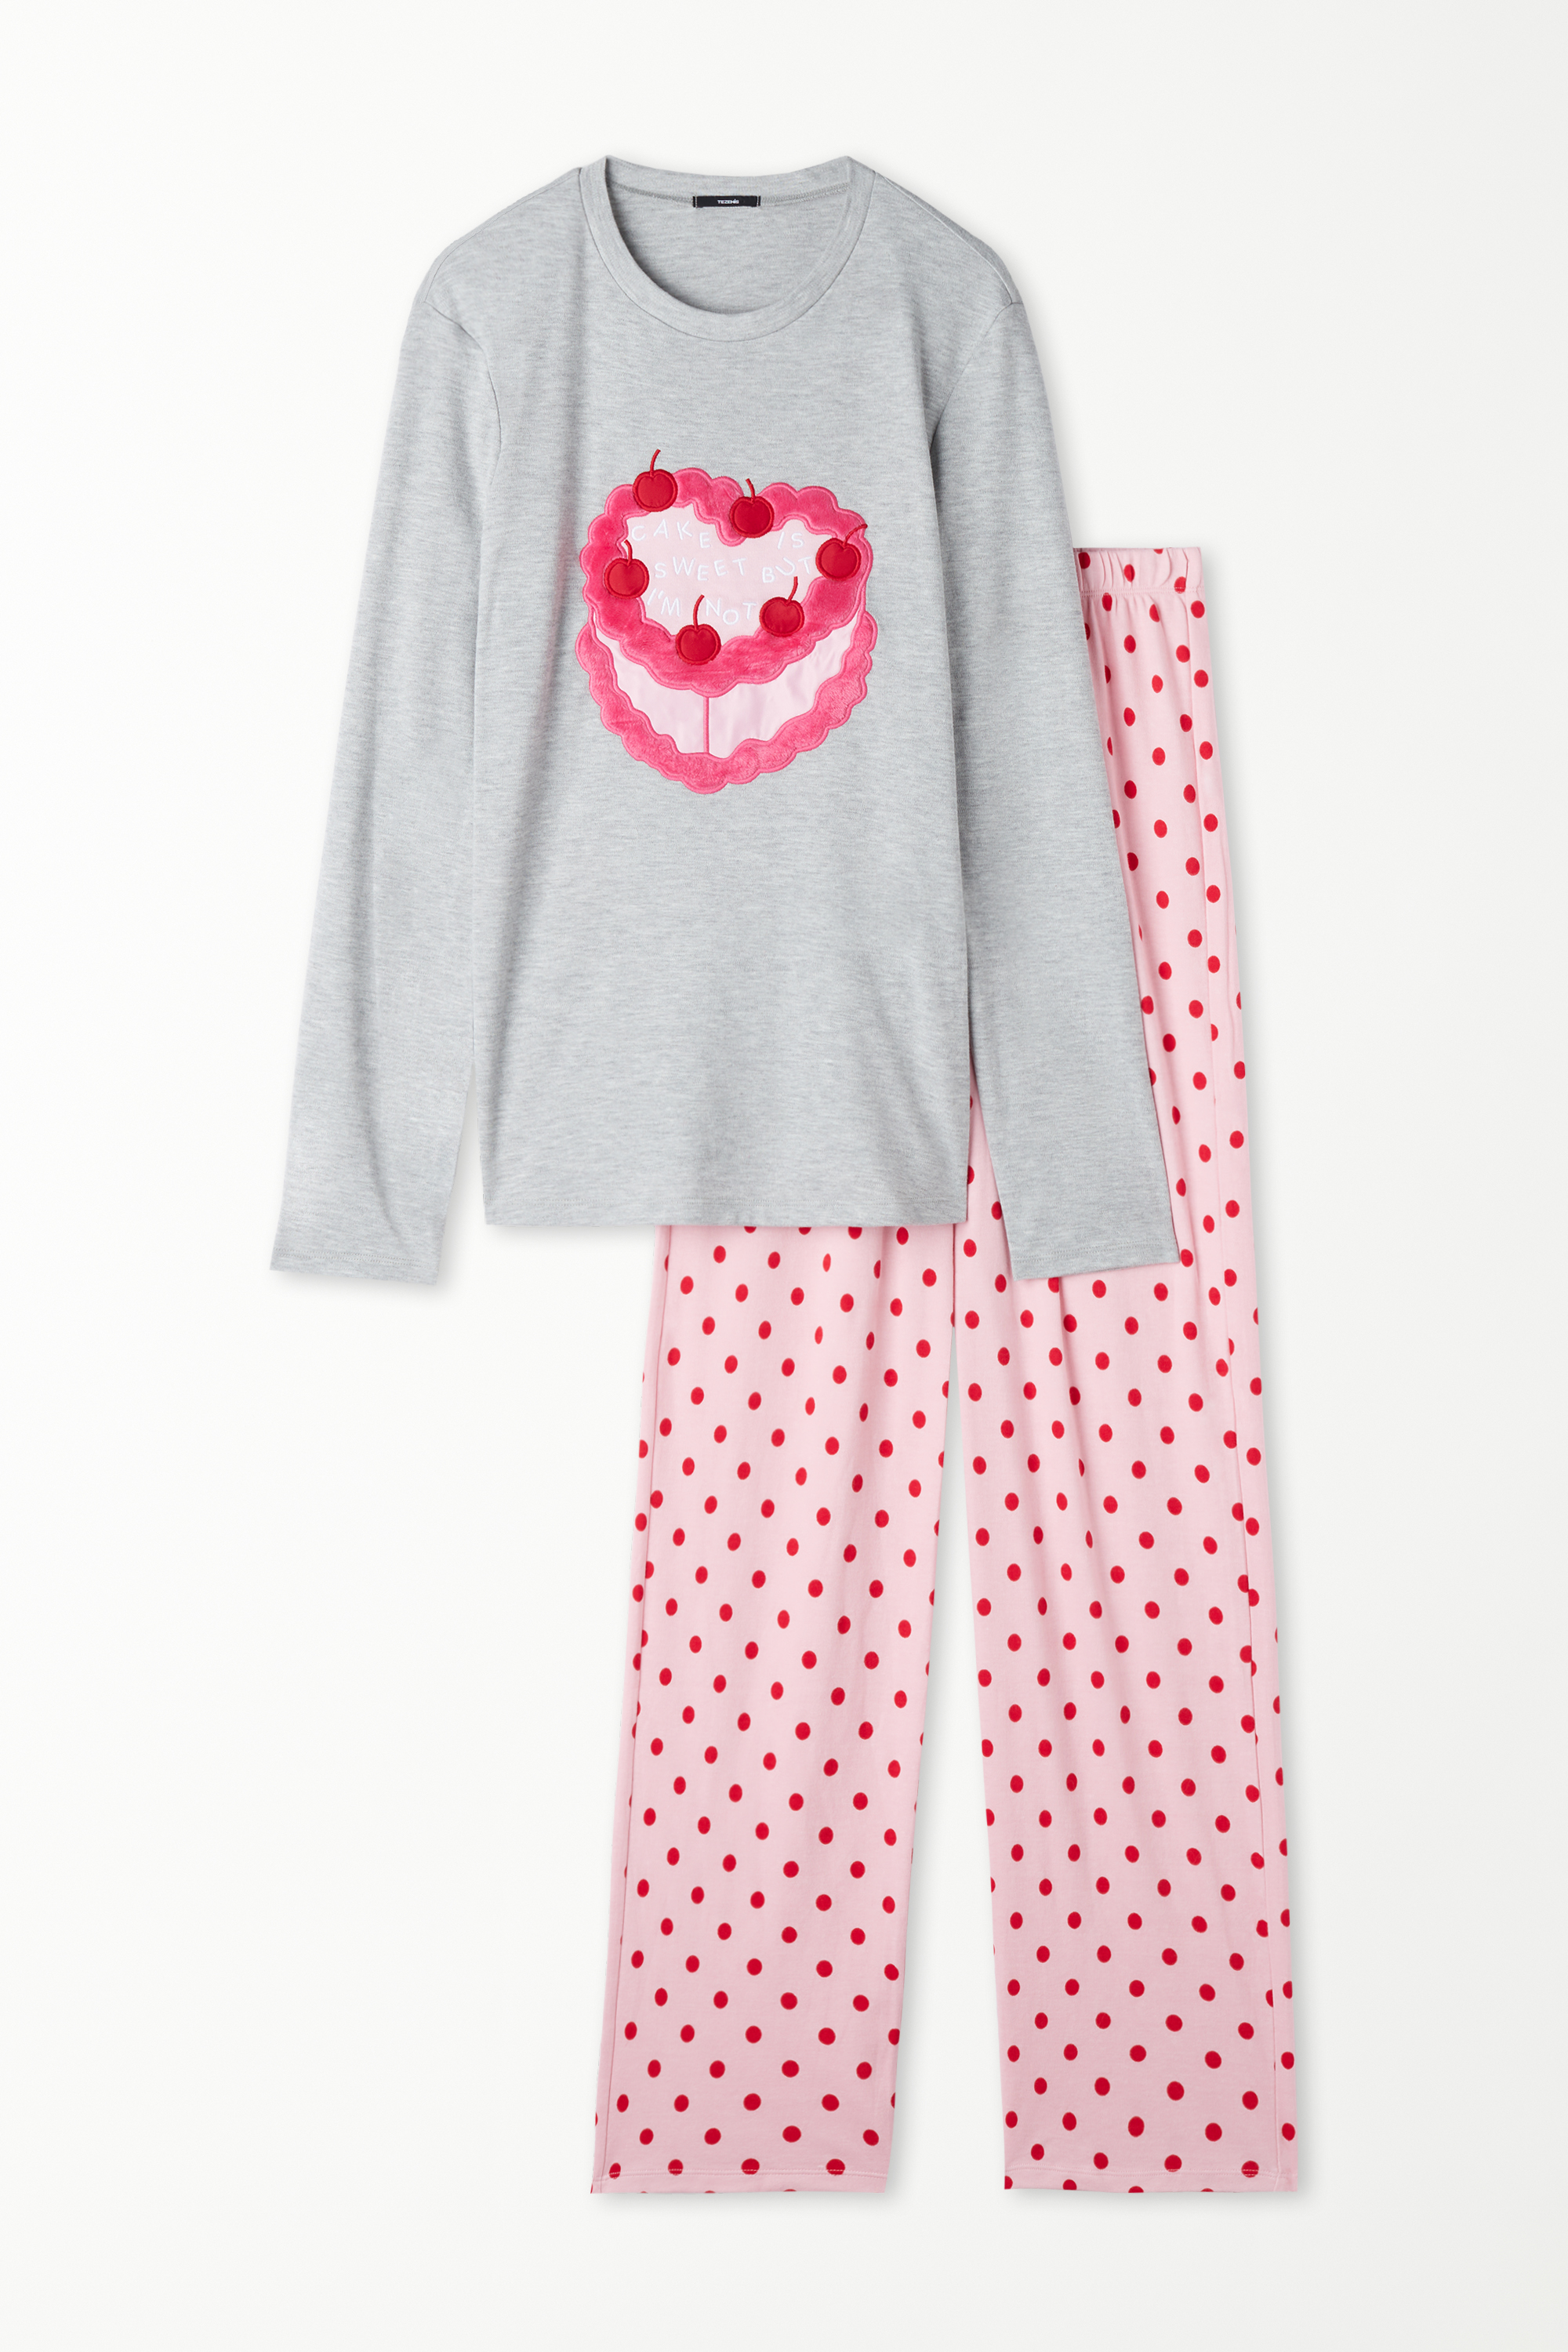 Langer Pyjama aus Baumwolle mit Kuchen-Print